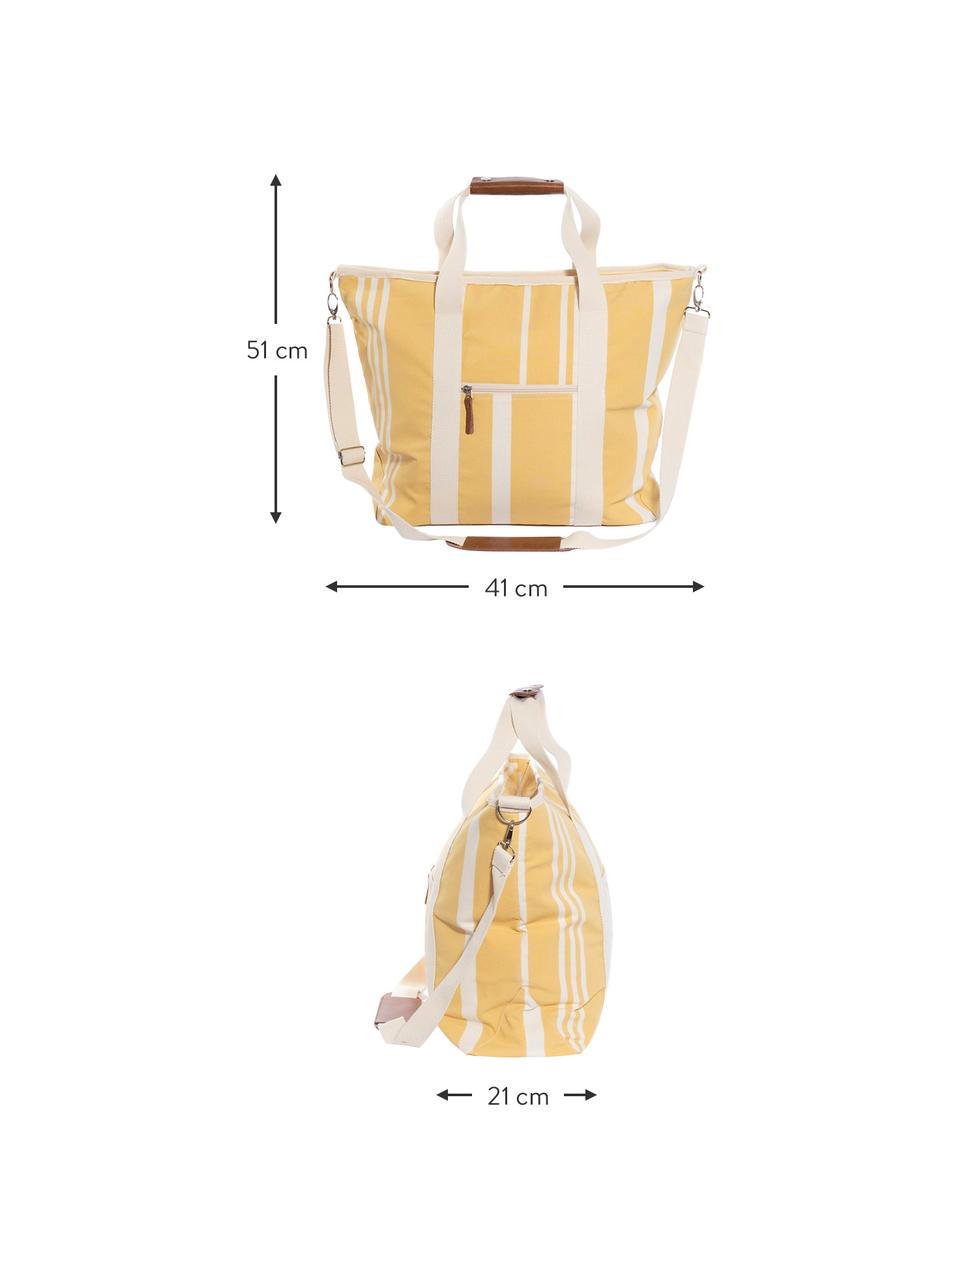 Chladicí taška Strand, 40% bavlna, 40% polyester, 15% voděodolný vinyl, 5% kůže, Žlutá, krémově bílá, D 41 cm, V 51 cm